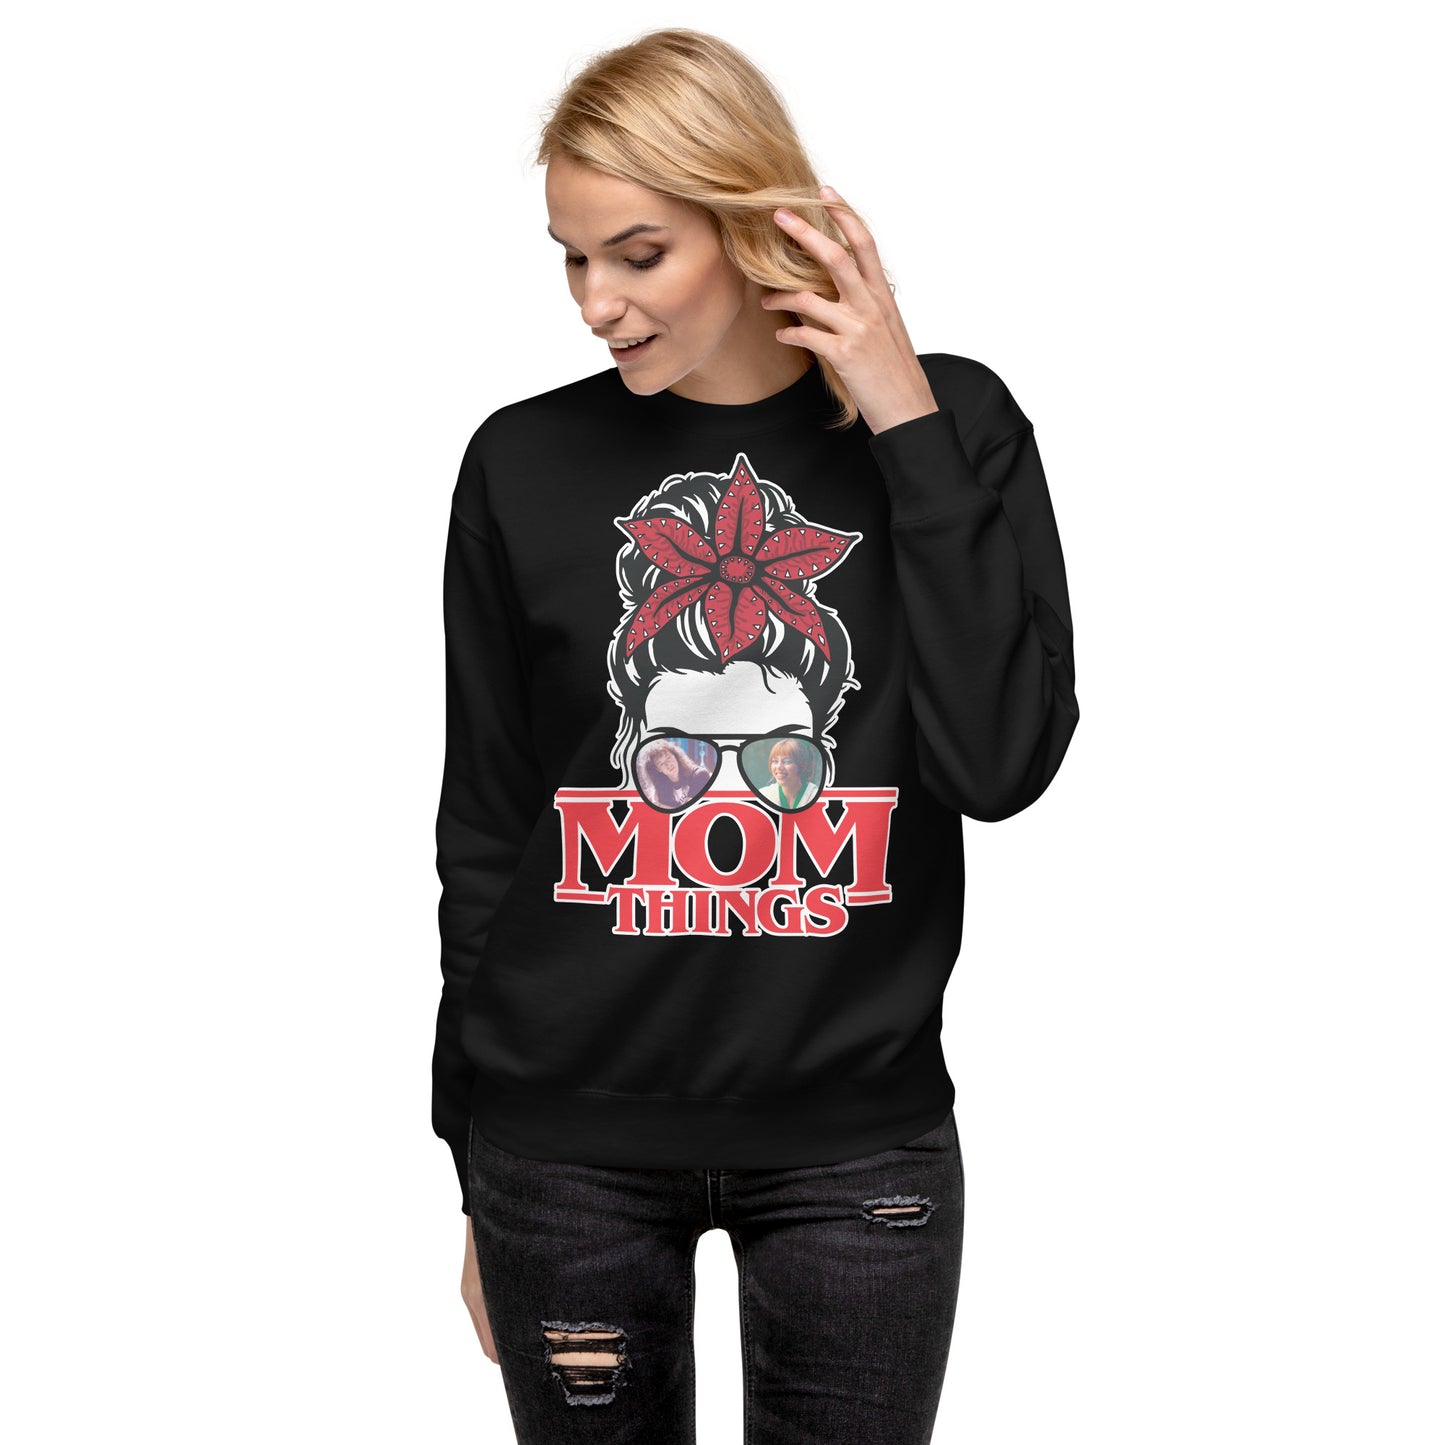 Mom Things Stranger Messy Demo Bun Eddie Chrissy Comfy Unisex Premium Sweatshirt